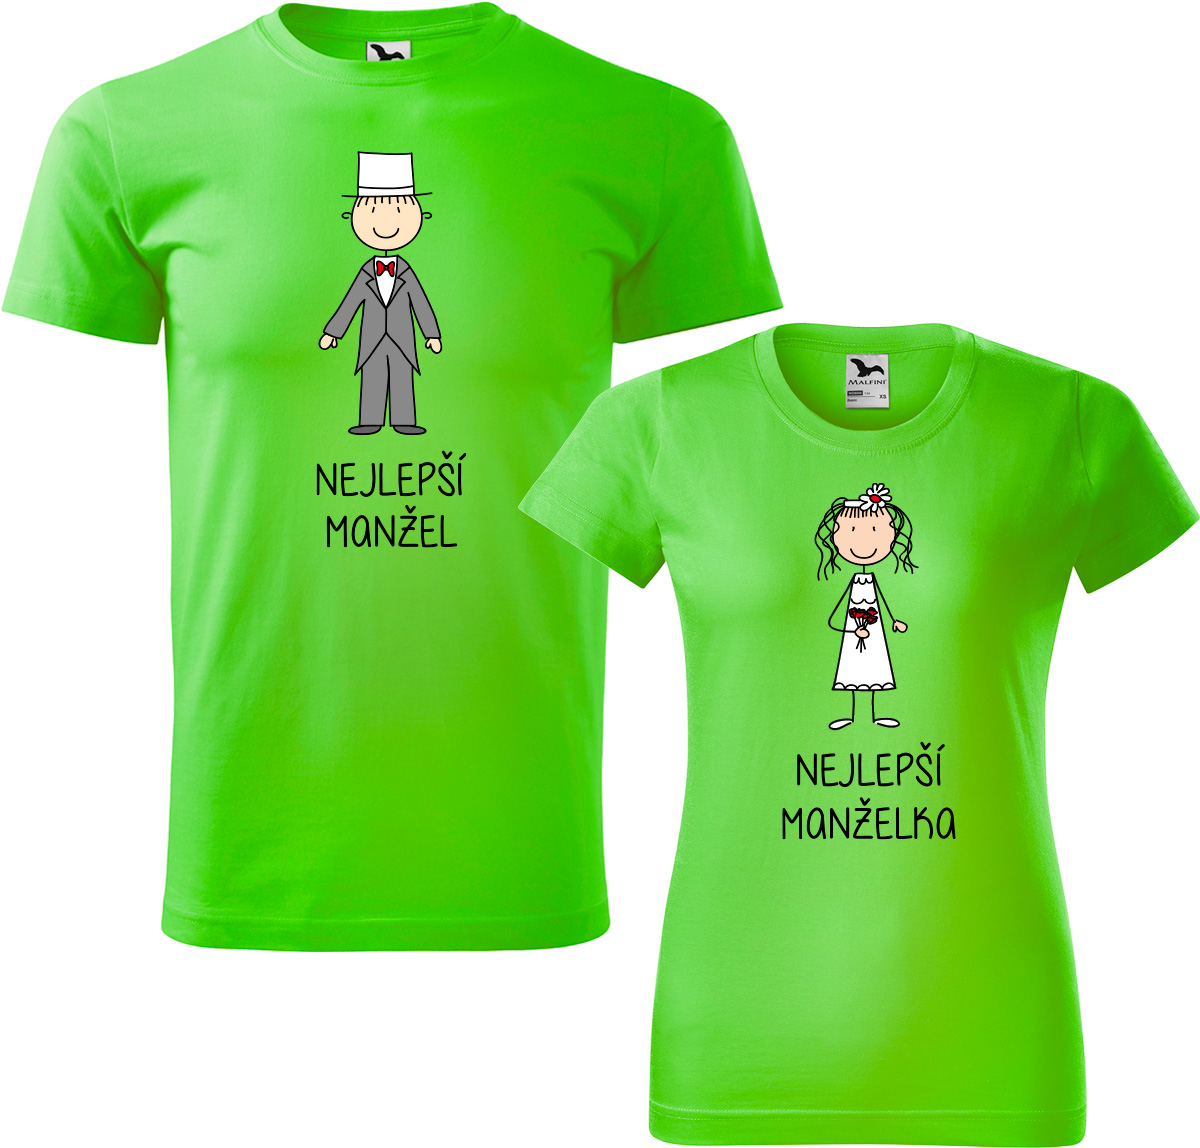 Trička pro páry - Nejlepší manžel a nejlepší manželka Barva: Apple Green (92), Velikost dámské tričko: XL, Velikost pánské tričko: 3XL